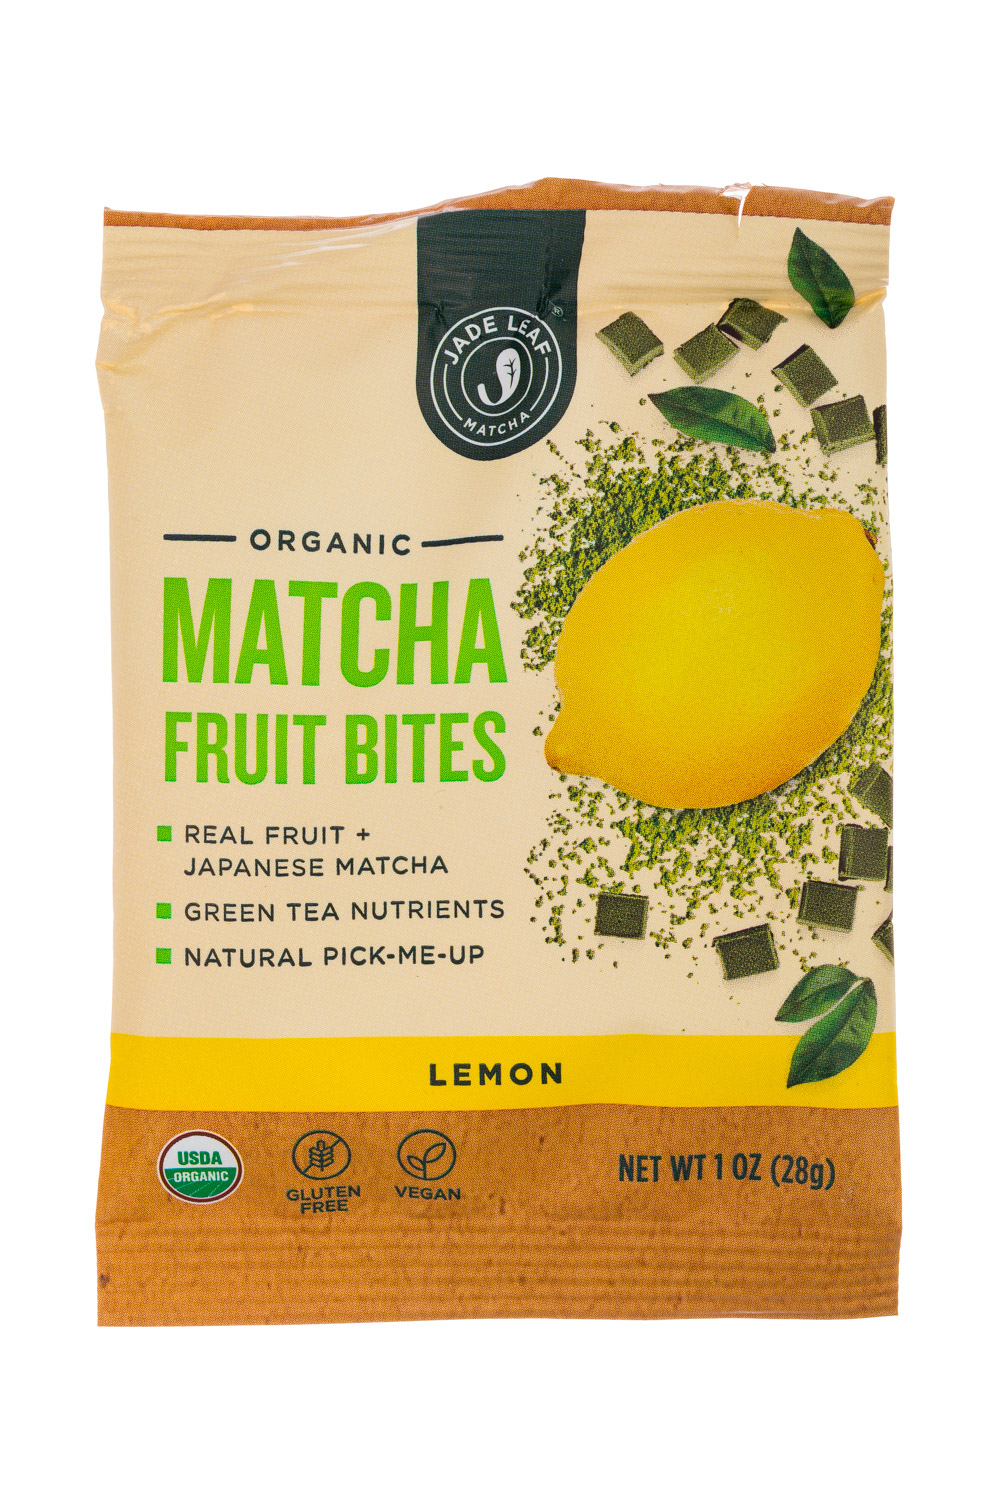 Jade Leaf Matcha Latte tea 2.2lb – Fair Dinkum coffee co.